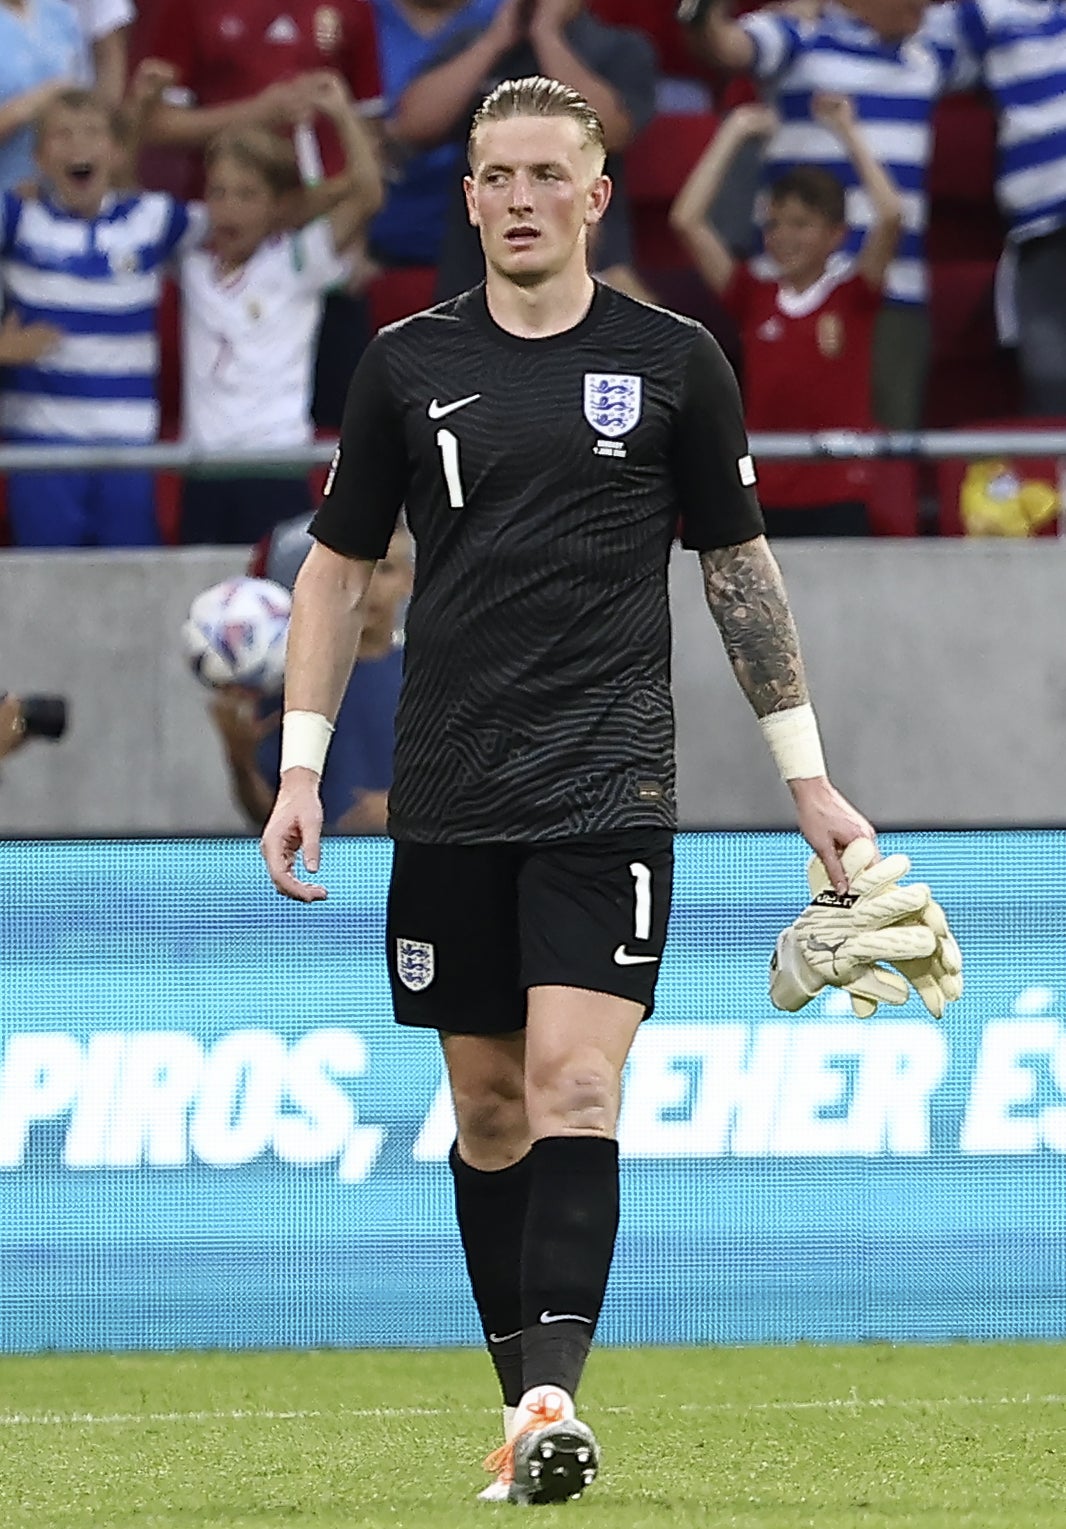 Jordan Pickford in action for England (Trenka Attila/PA)